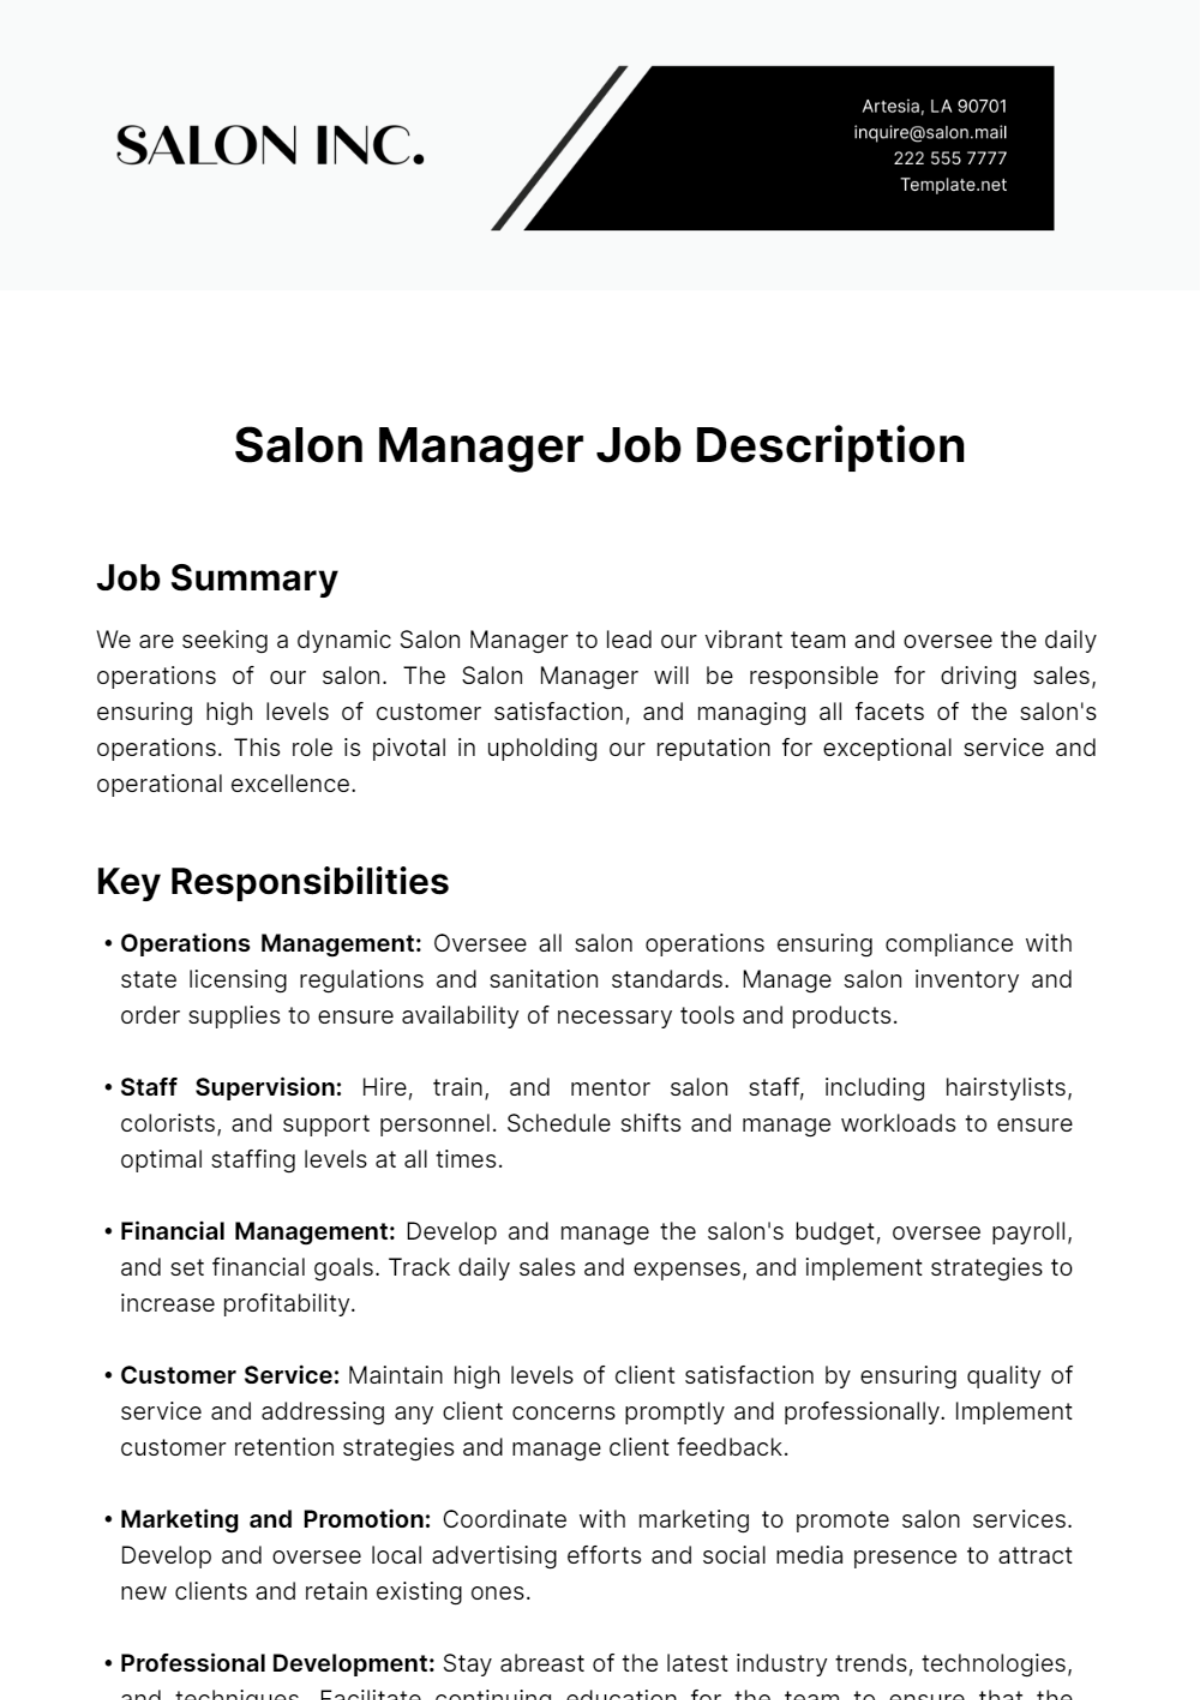 Salon Manager Job Description Template